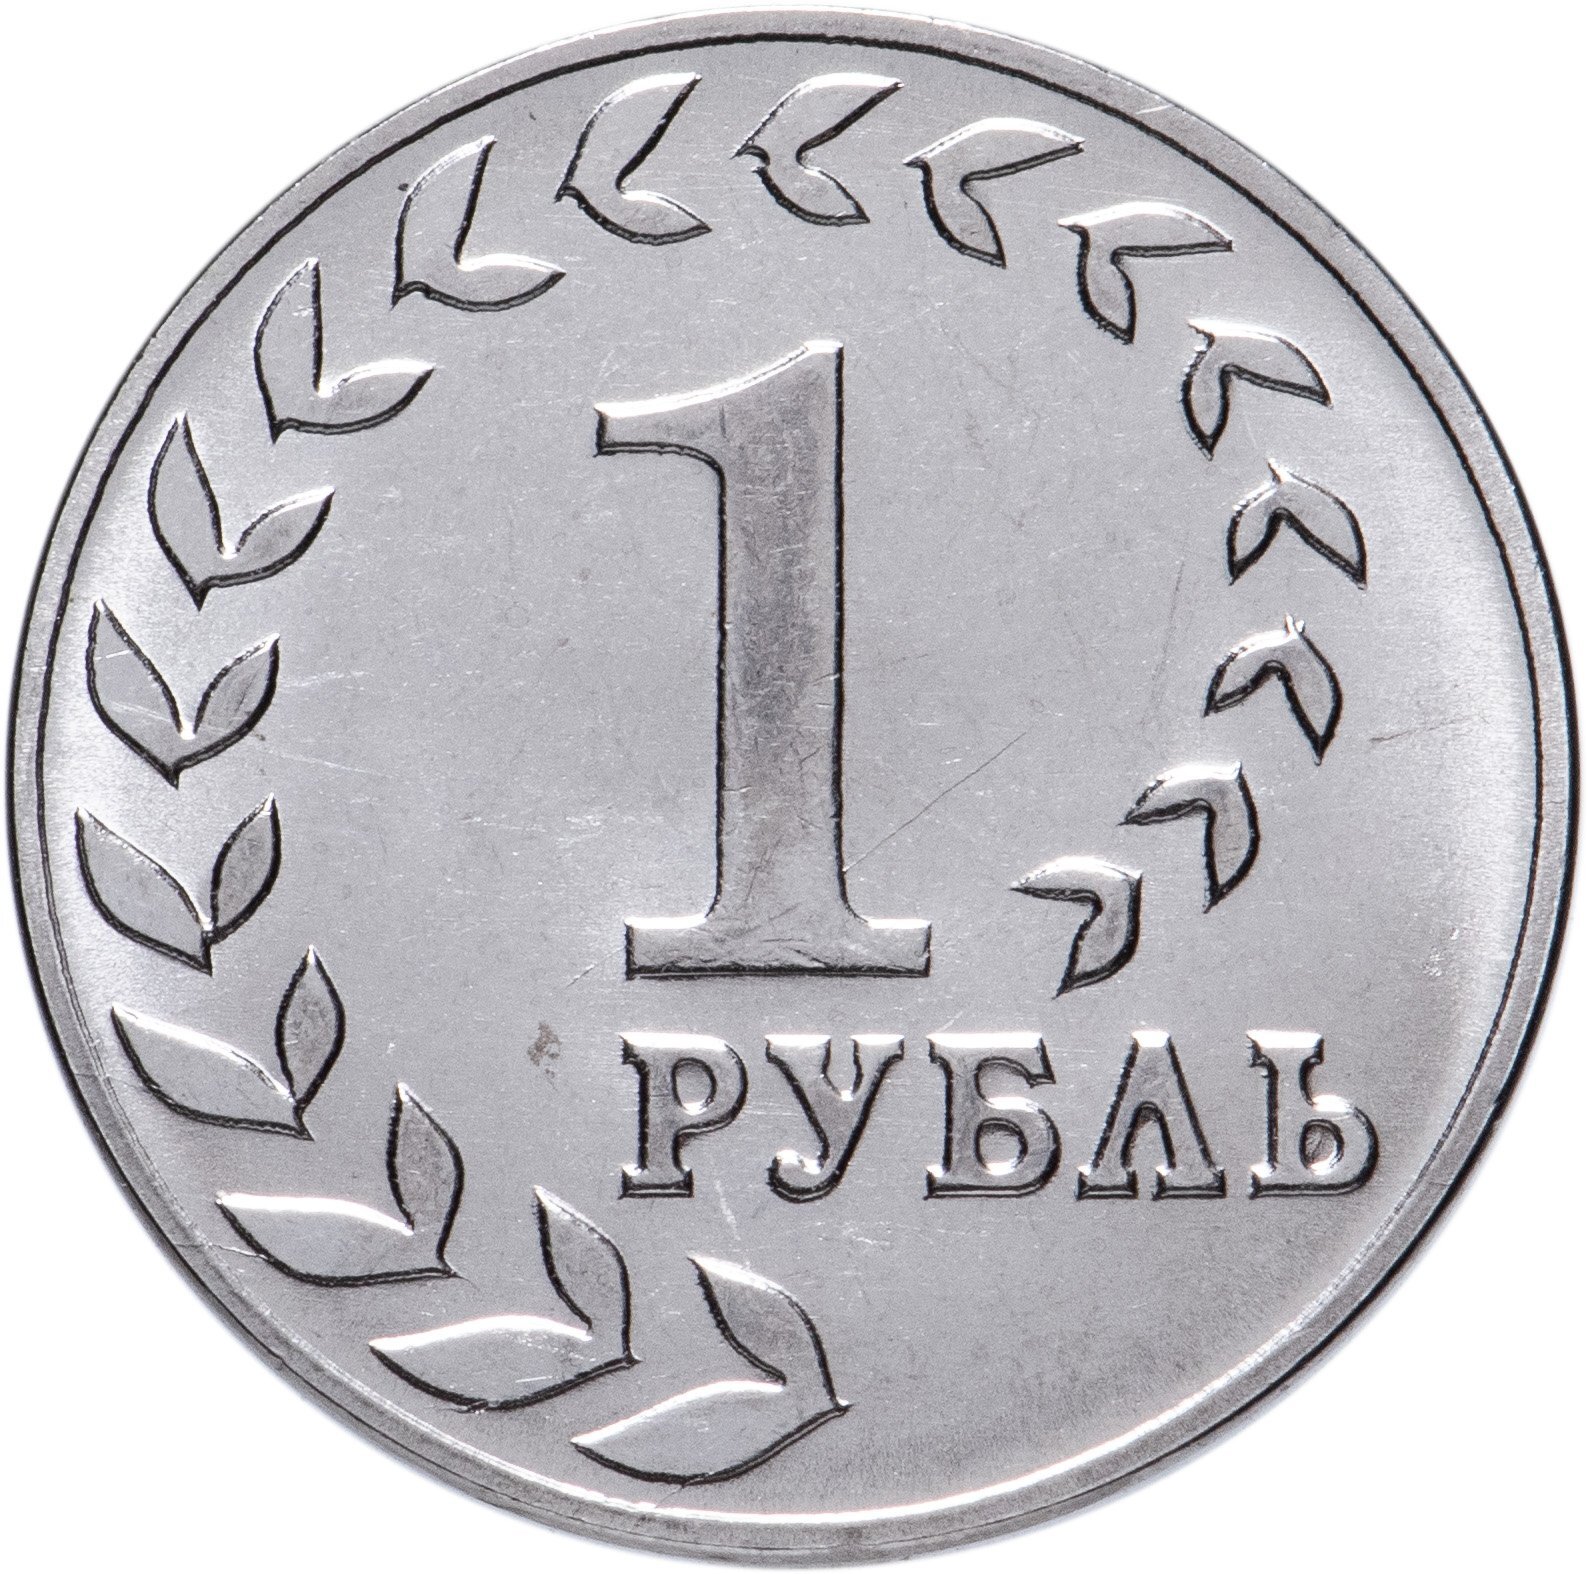 1 рубль 80 года. Приднестровье 1 рубль 2021. Монеты Приднестровья 1 рубль. Монеты Приднестровья 1 рубль 2021. 1 Рубль ПМР монета.